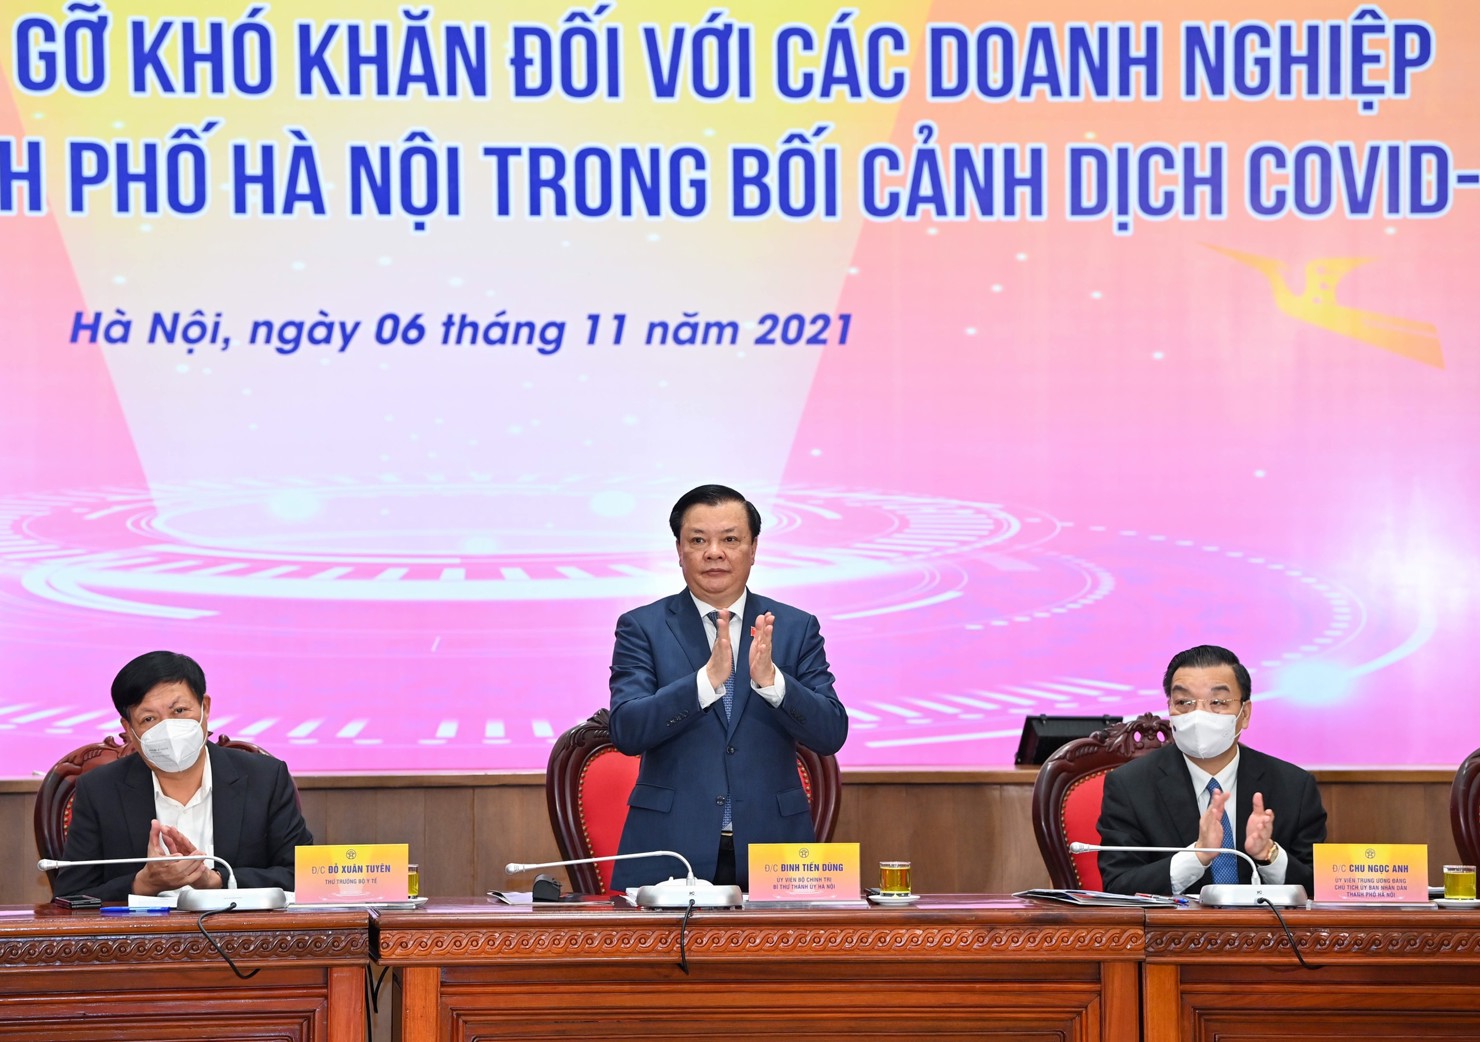 Bí thư Thành ủy Hà Nội Đinh Tiến Dũng: Thành phố mong nhận được những kiến nghị, đề xuất, những sáng kiến, kinh nghiệm để có giải pháp hỗ trợ, thúc đẩy doanh nghiệp phát triển. Ảnh: VGP/Gia Huy